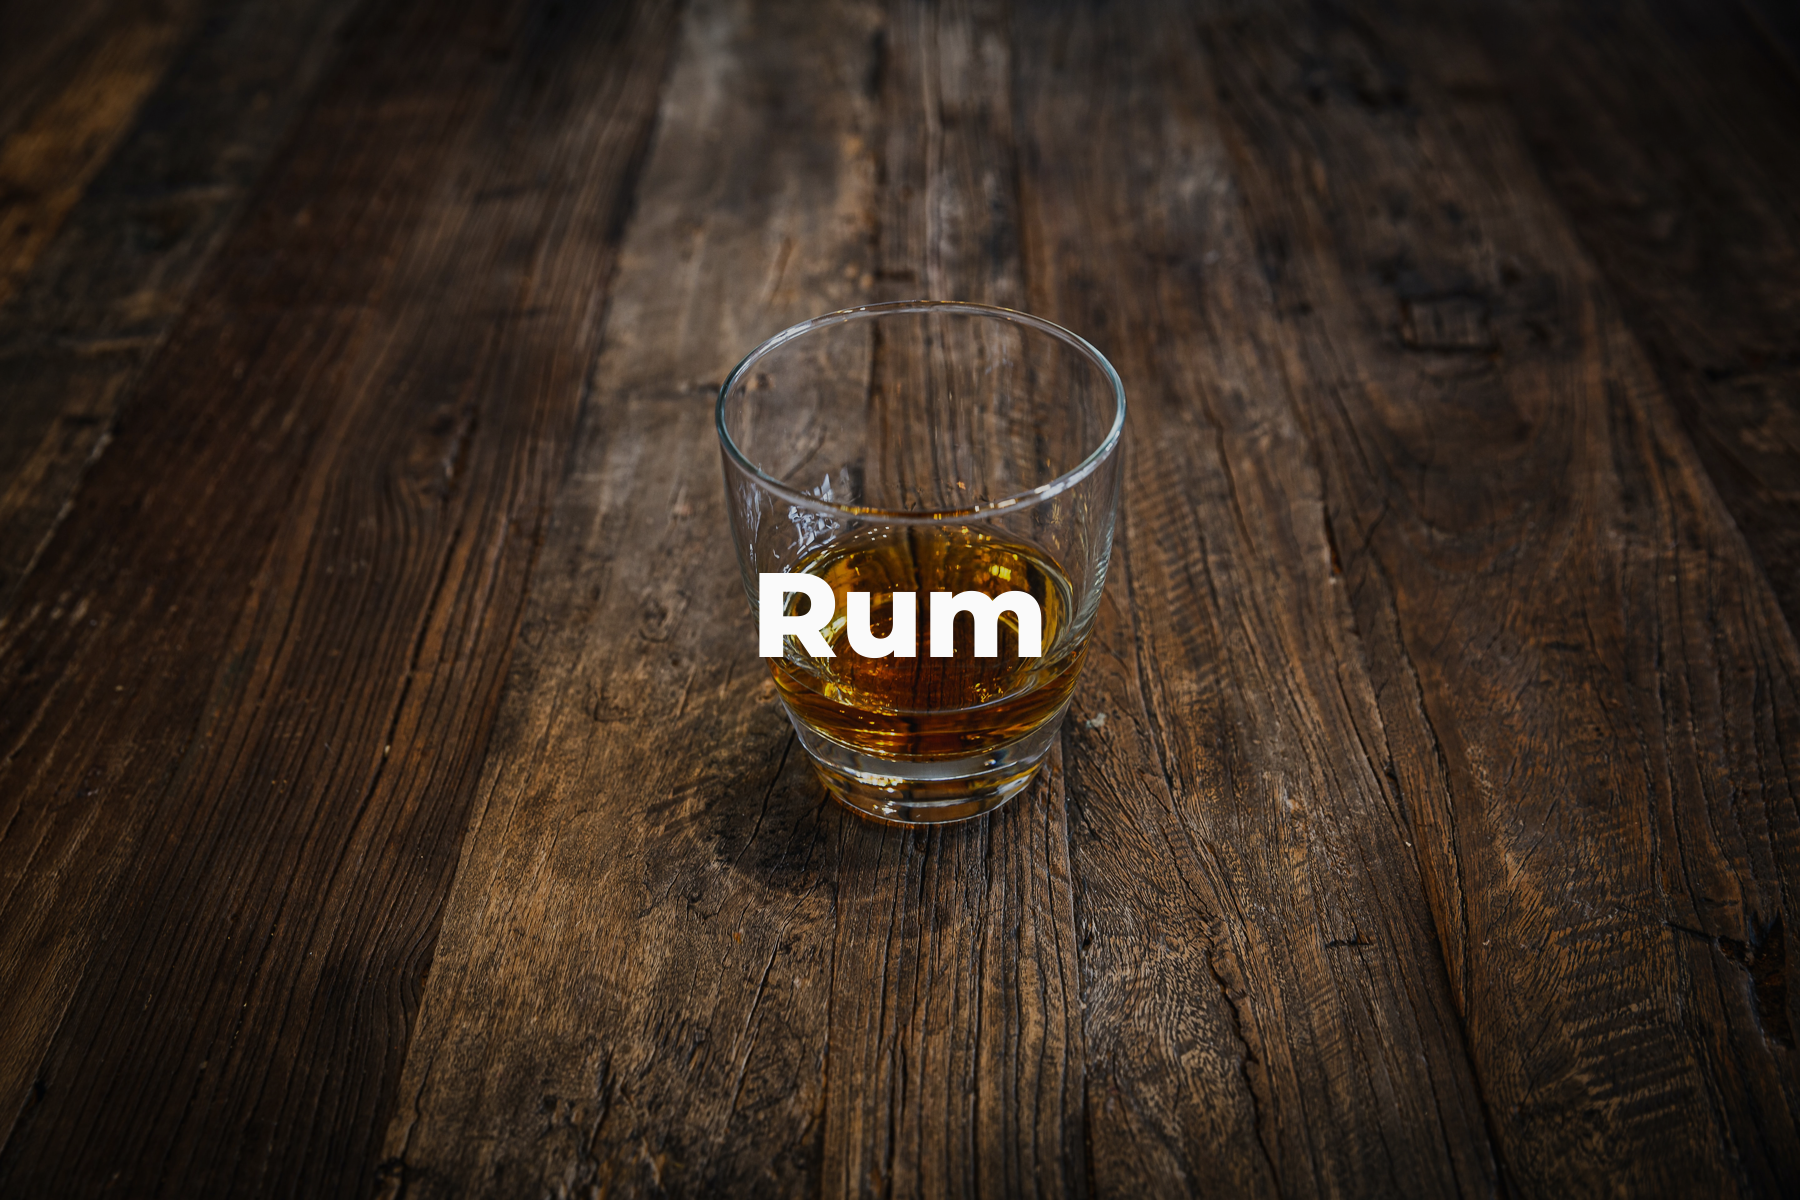 Team Pick: Rum